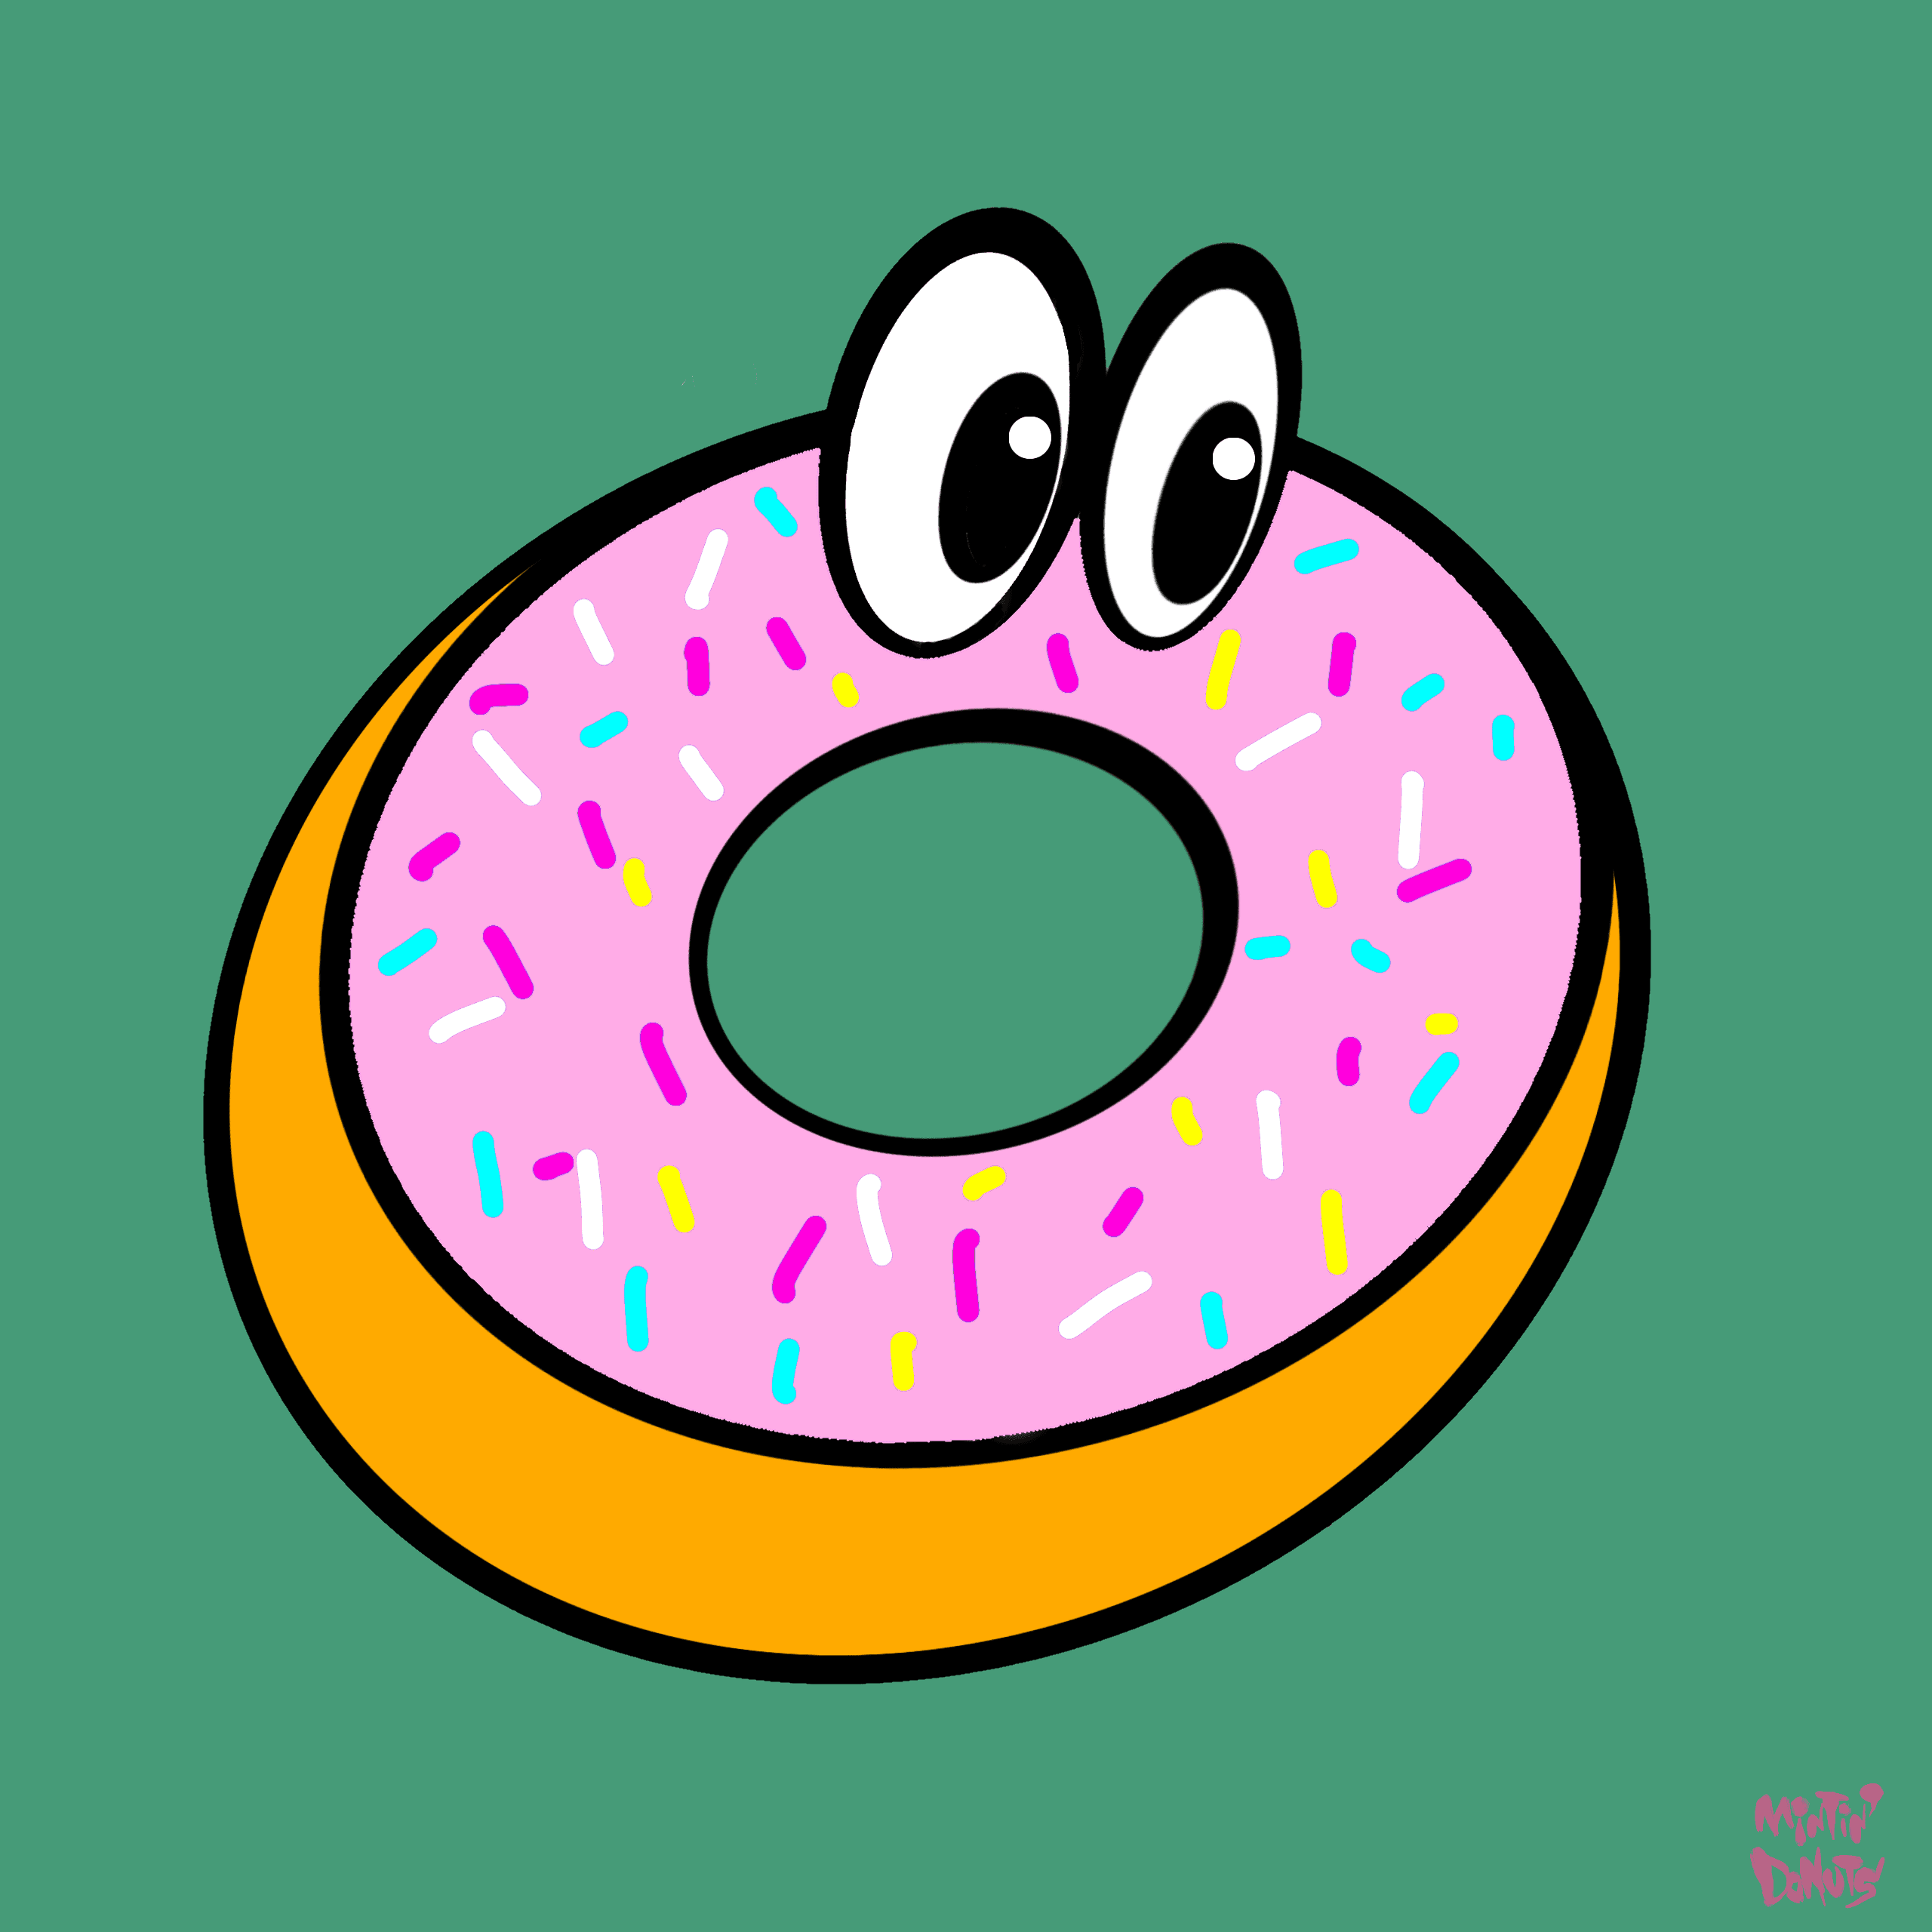 Mintin' Donuts #057